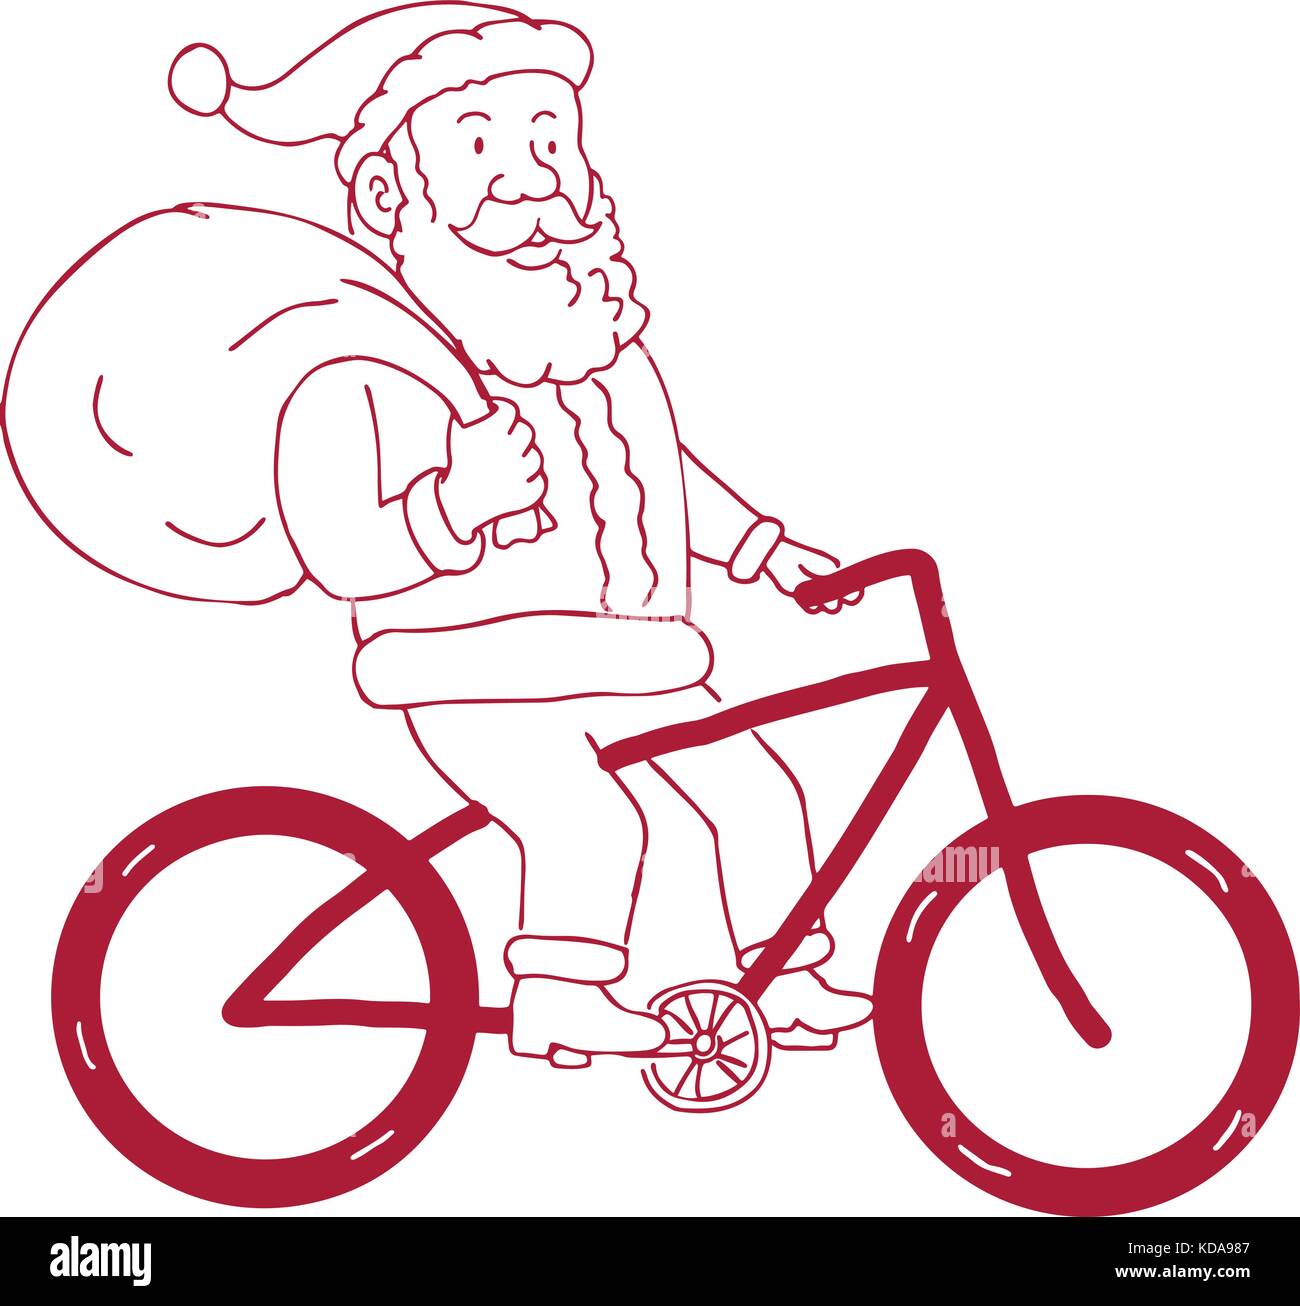 Cartoon Zeichnung Skizze stil Abbildung von Santa Claus mit dem Fahrrad Fahrrad holding Tasche Geschenke Geschenke auf Schulter von der Seite gesehen auf isolierte Stock Vektor